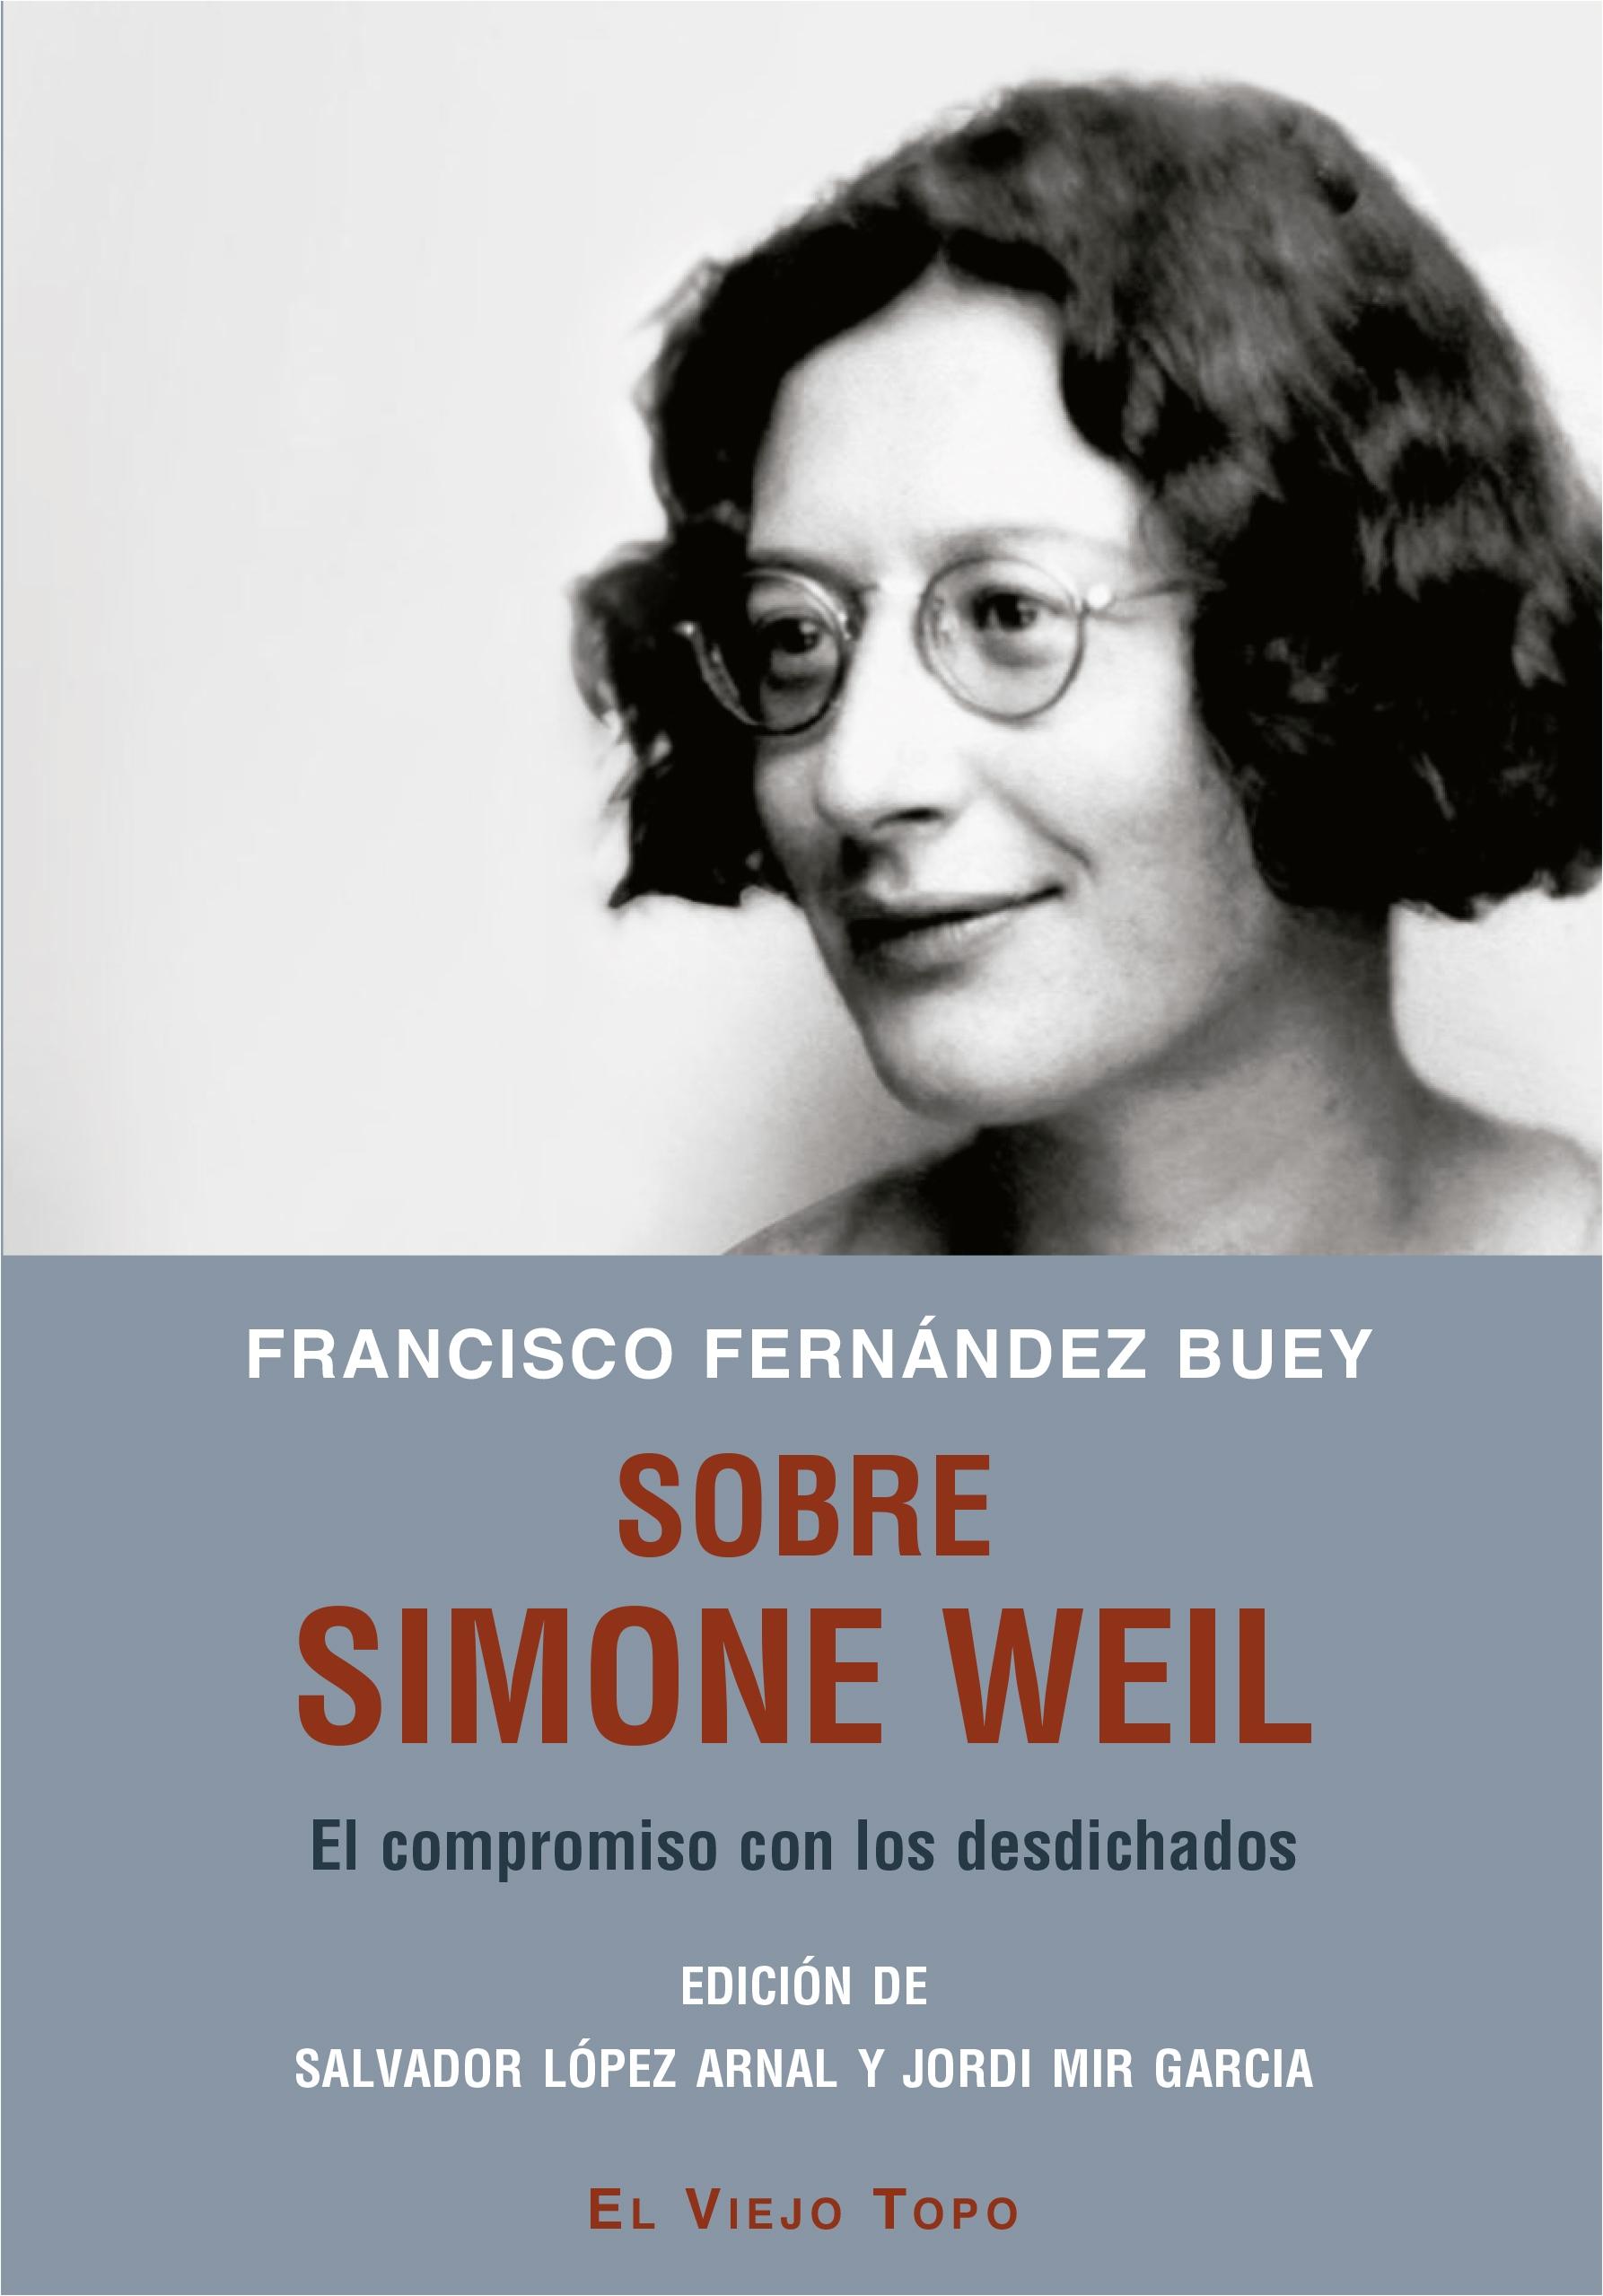 Sobre Simone Weil "El compromiso con los desdichados"